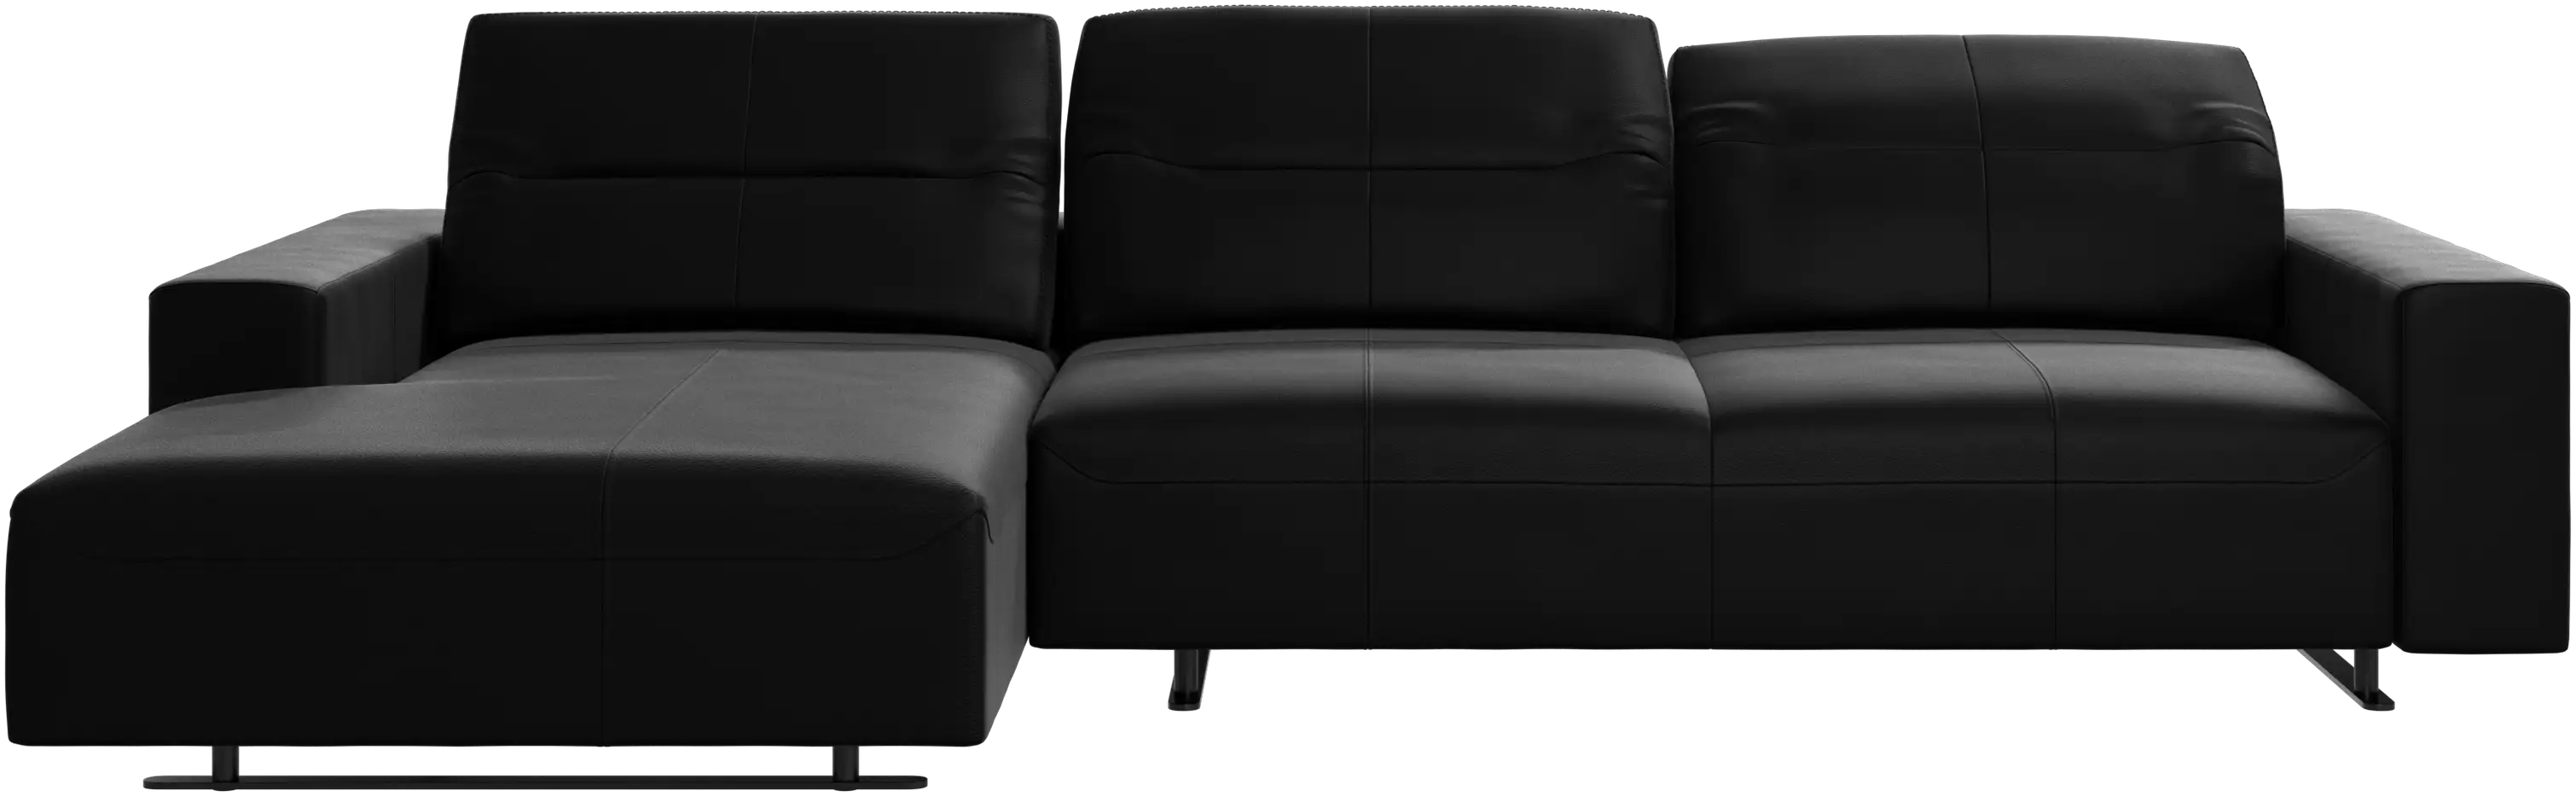 Sofá Hampton con respaldo ajustable y unidad de descanso en el lateral izquierdo, almacenaje en la parte derecha del sofá